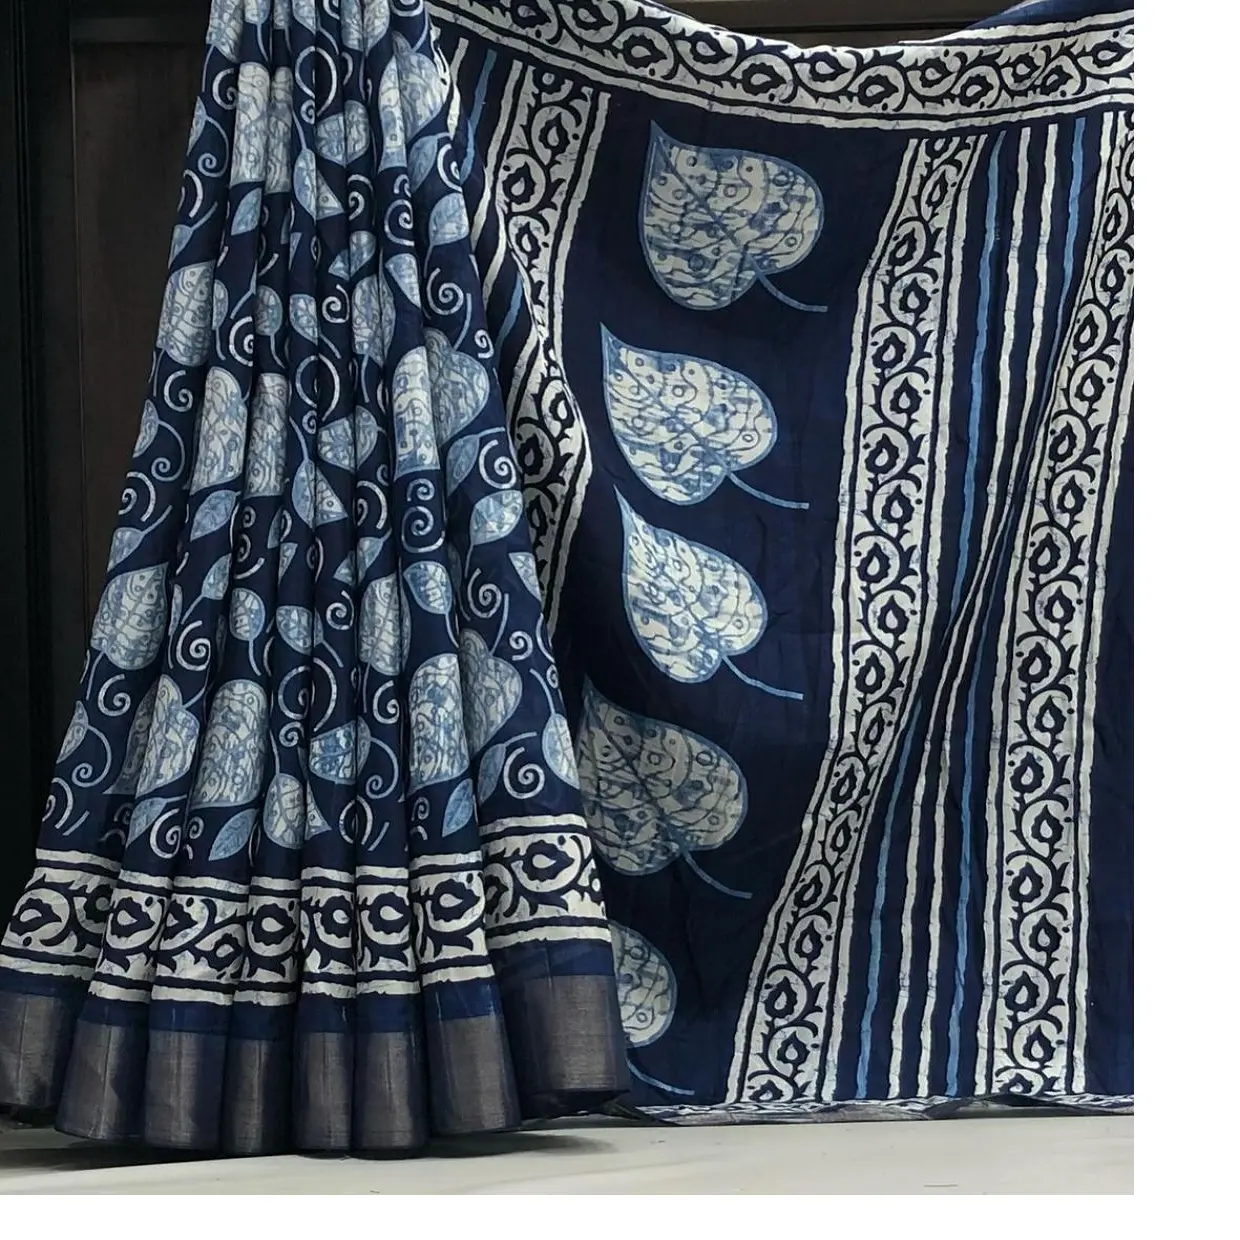 Individuell gefertigt im großen Blatt-Design weich handgefertigt indigo bedruckte Saris mit Zari-Patti-Rand einschließlich Bluse im Blumen-Design